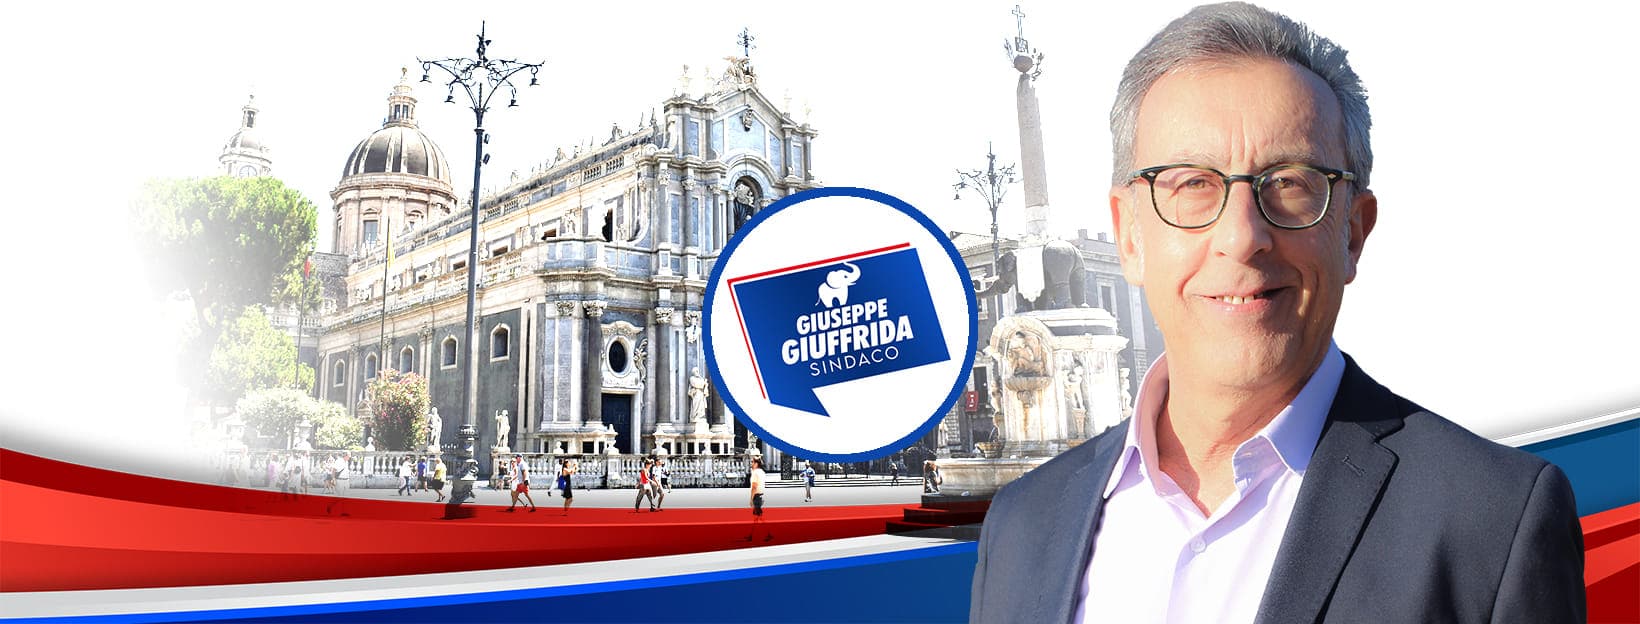 Amministrative Catania, il candidato sindaco Giuffrida declina l’invito di Lipera: “Non siamo interessati ad apparentamenti”